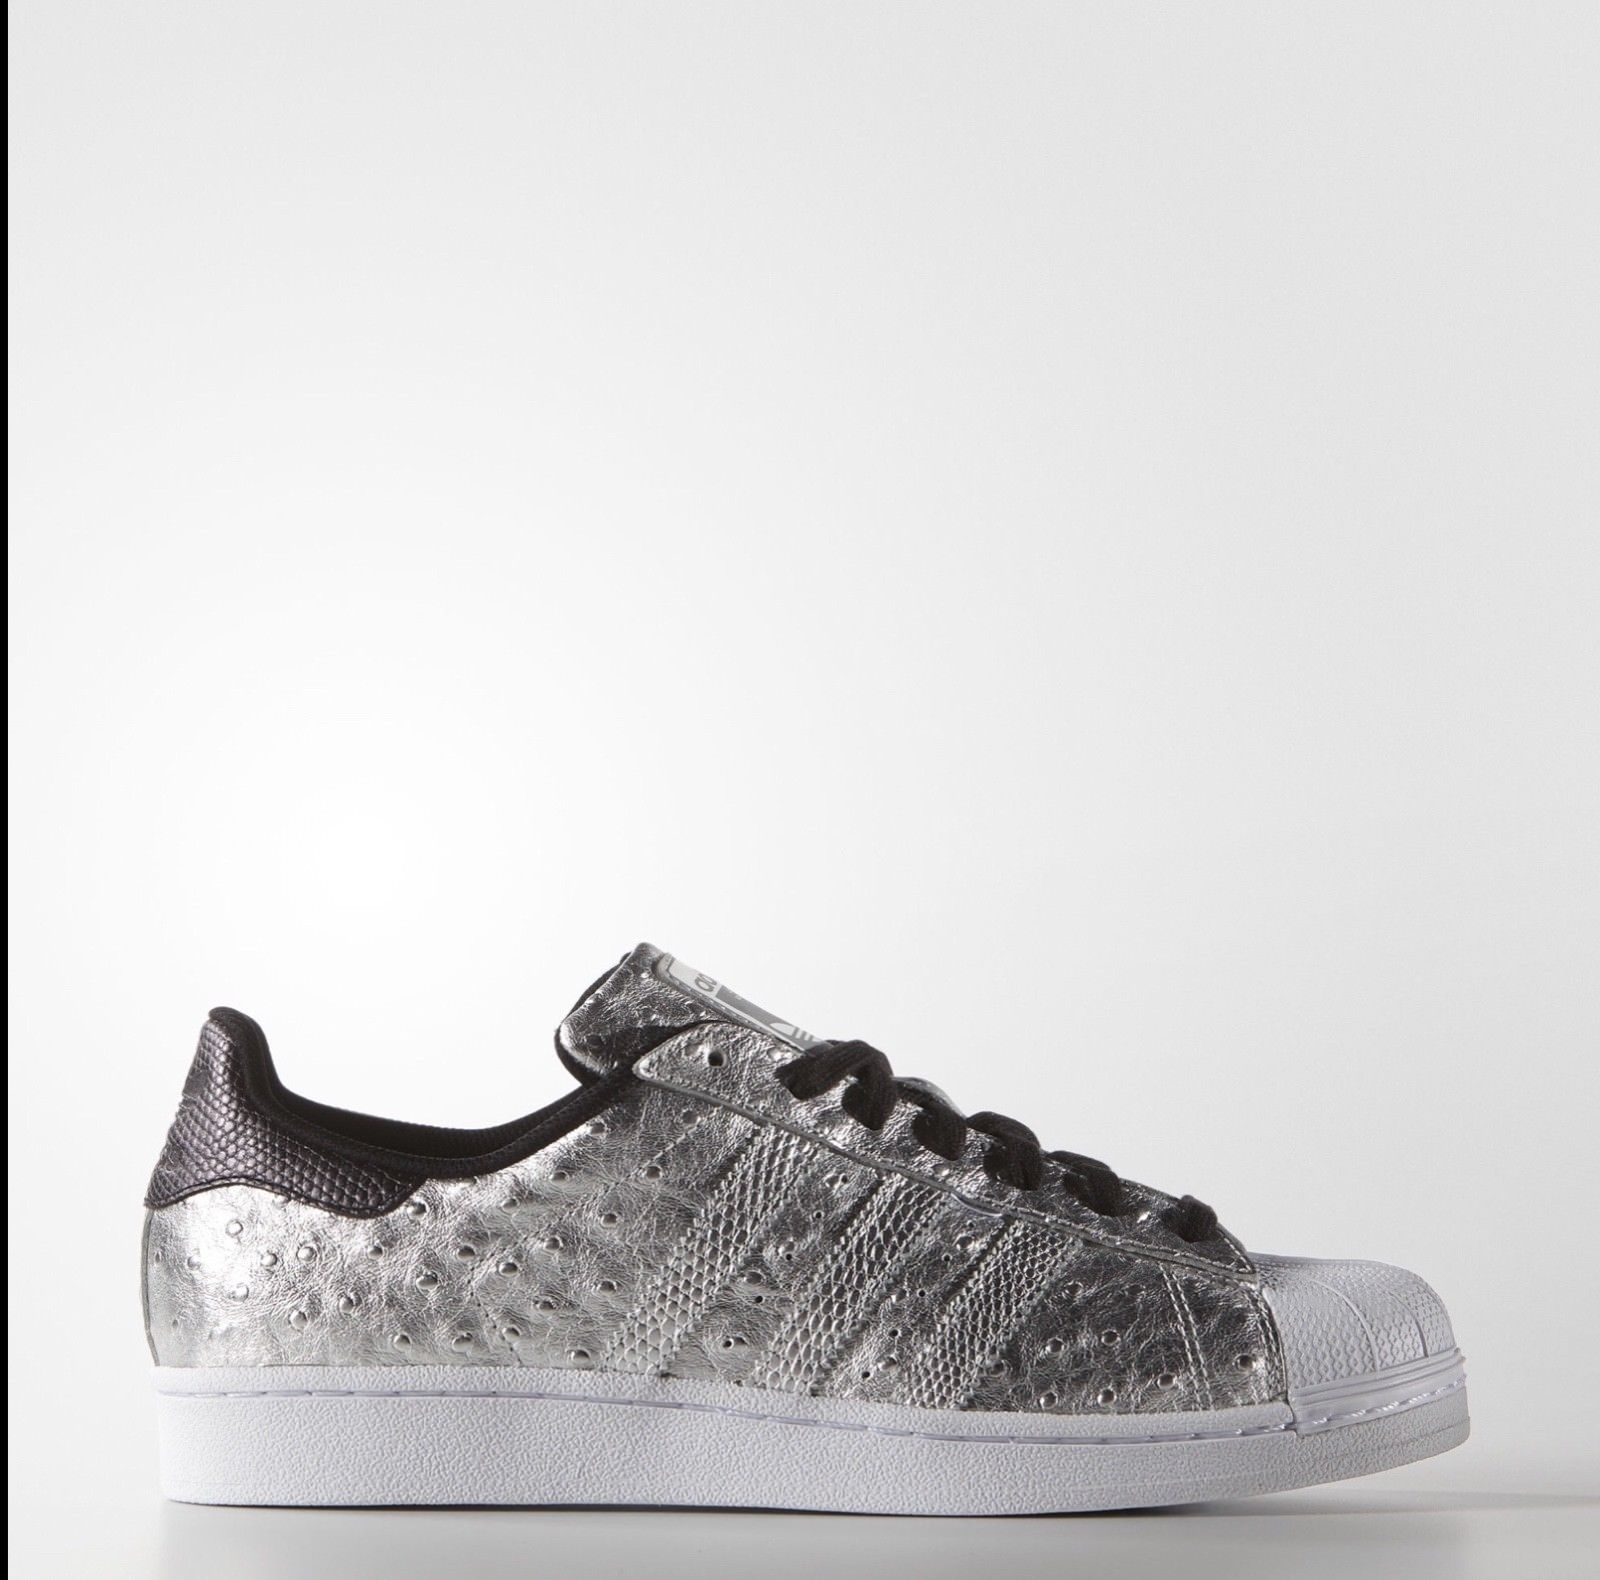 Les plus belles chaussures Adidas Superstars vendues sur eBay !